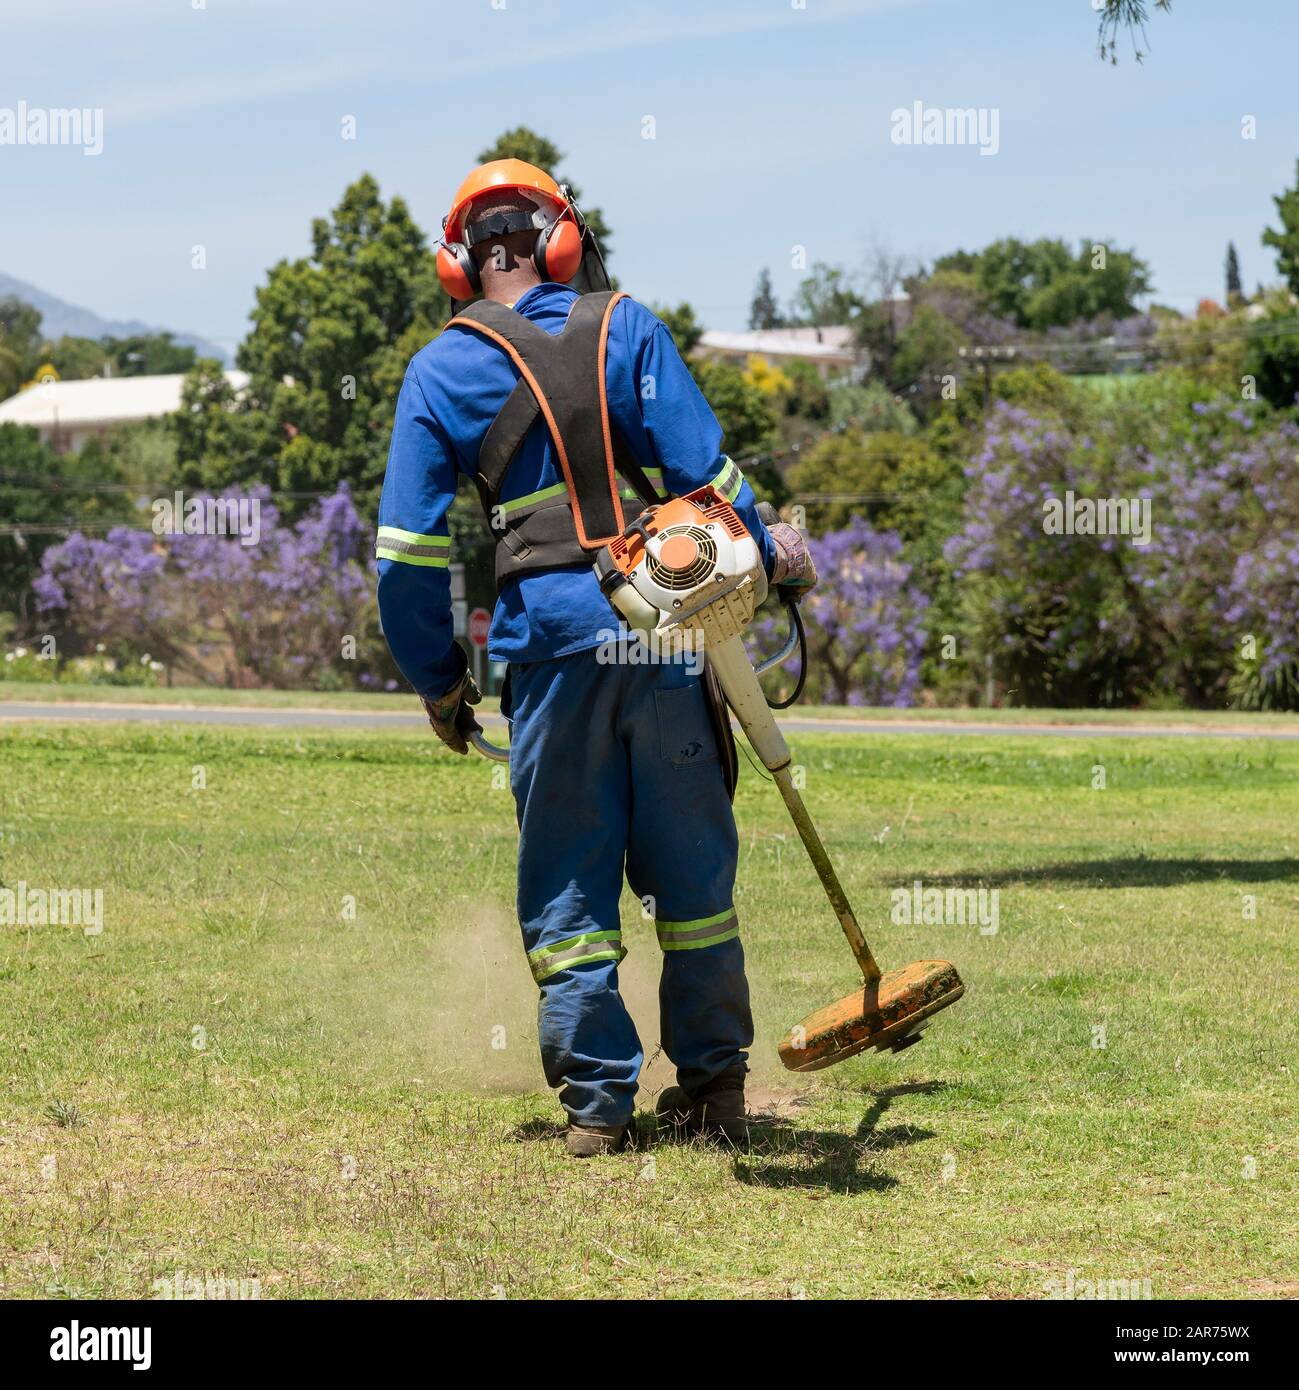 Homme portant des vêtements de protection et un casque de sécurité qui déborde d'herbe dans un jardin. Le Cap Occidental, Afrique Du Sud Banque D'Images